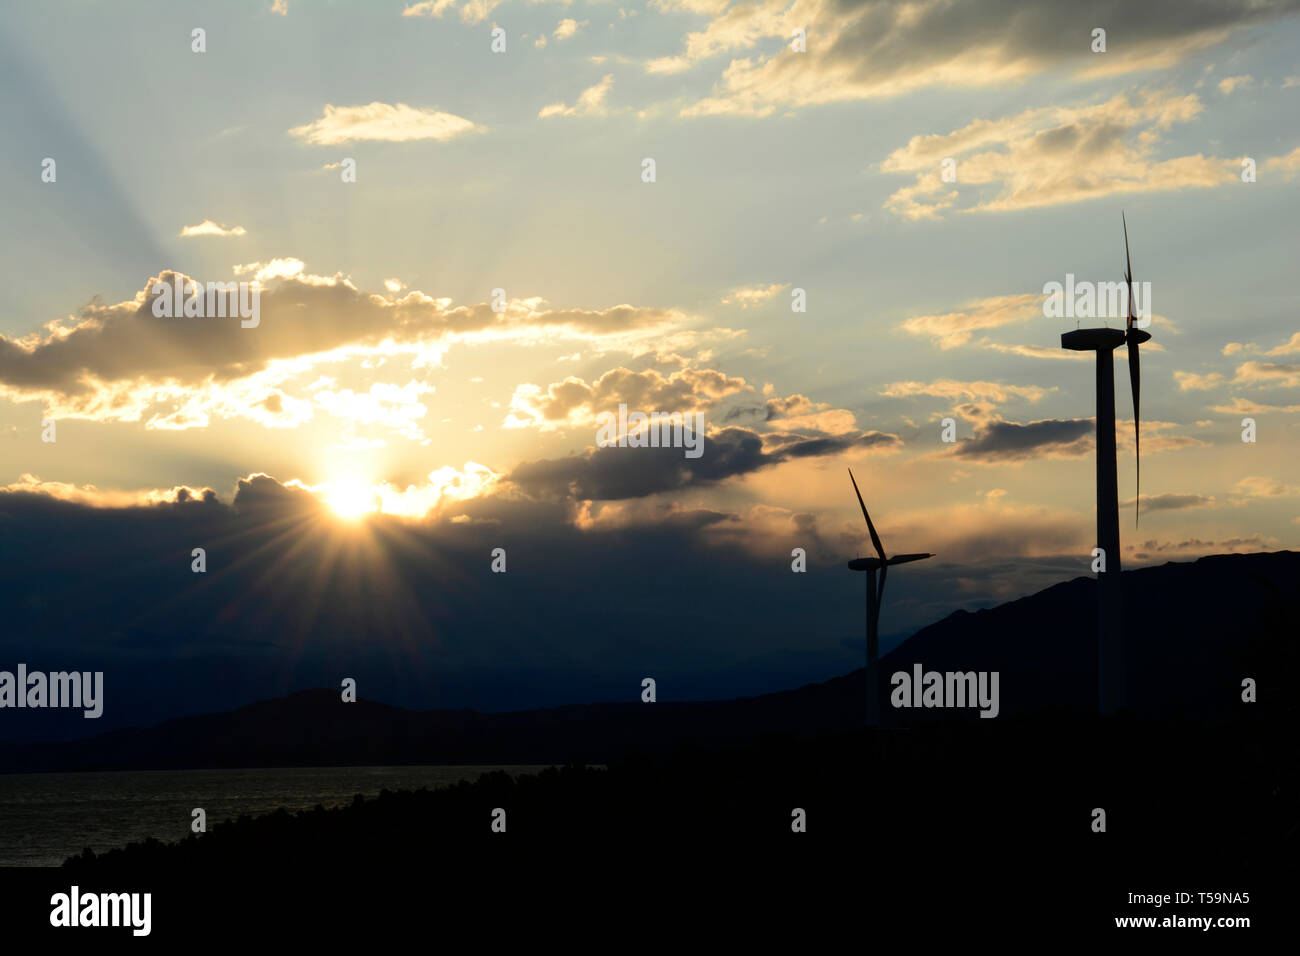 Silhouette sombre de l'énergie éolienne éoliennes sur la colline en face de ciel coucher de soleil nuageux spectaculaire, la production d'électricité respectueuse de l'environnement Banque D'Images